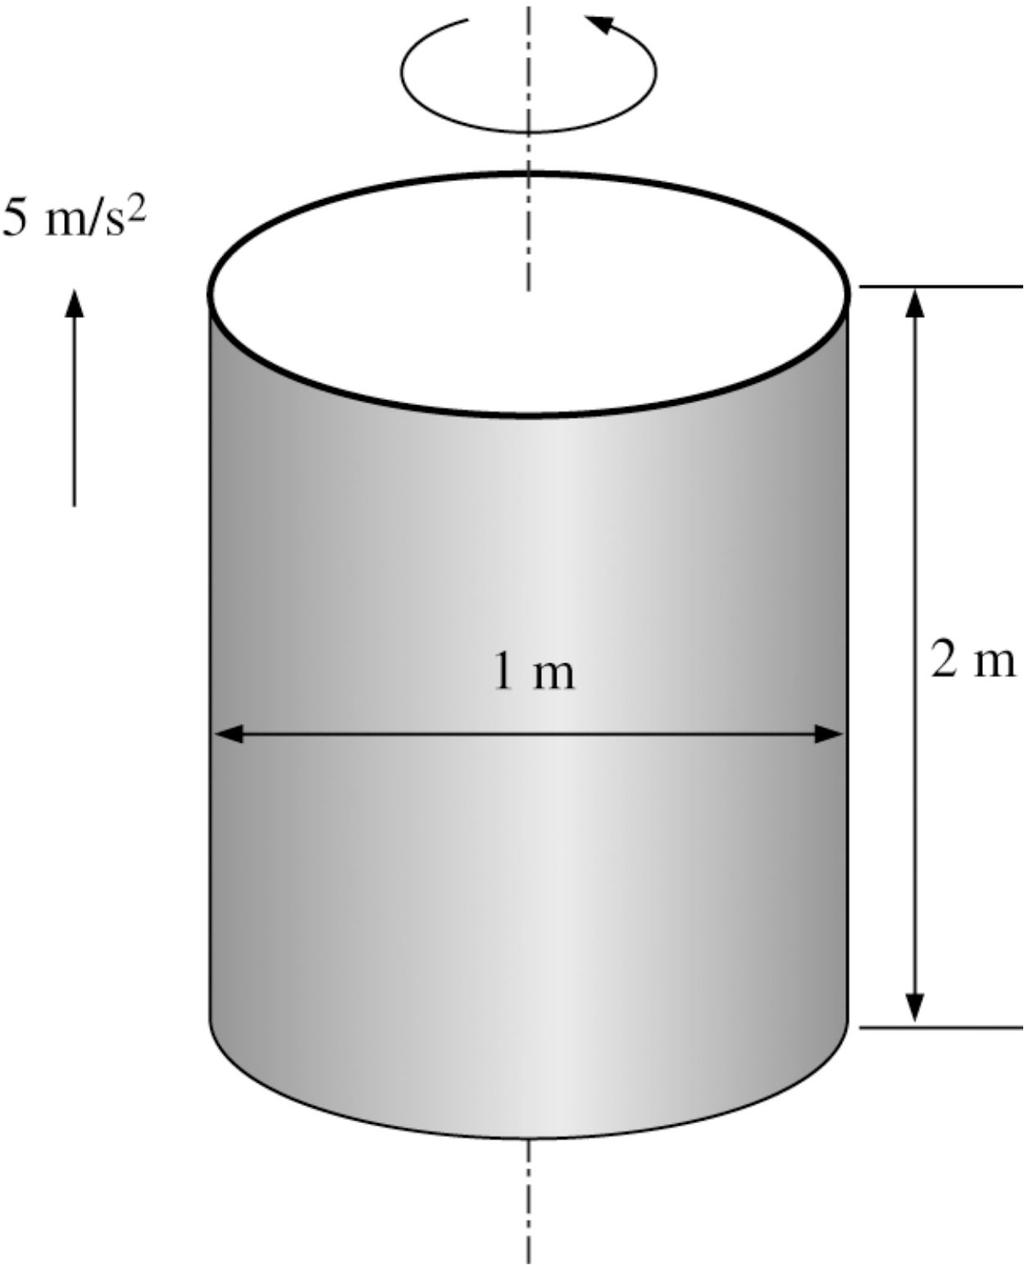 3.111 Un cilindro verticale chiuso, del diametro di 1 m e altezza di 2 m, completamente pieno di benzina di densità 740 kg/m 3, viene posto in rotazione attorno al suo asse verticale a 90 gpm e